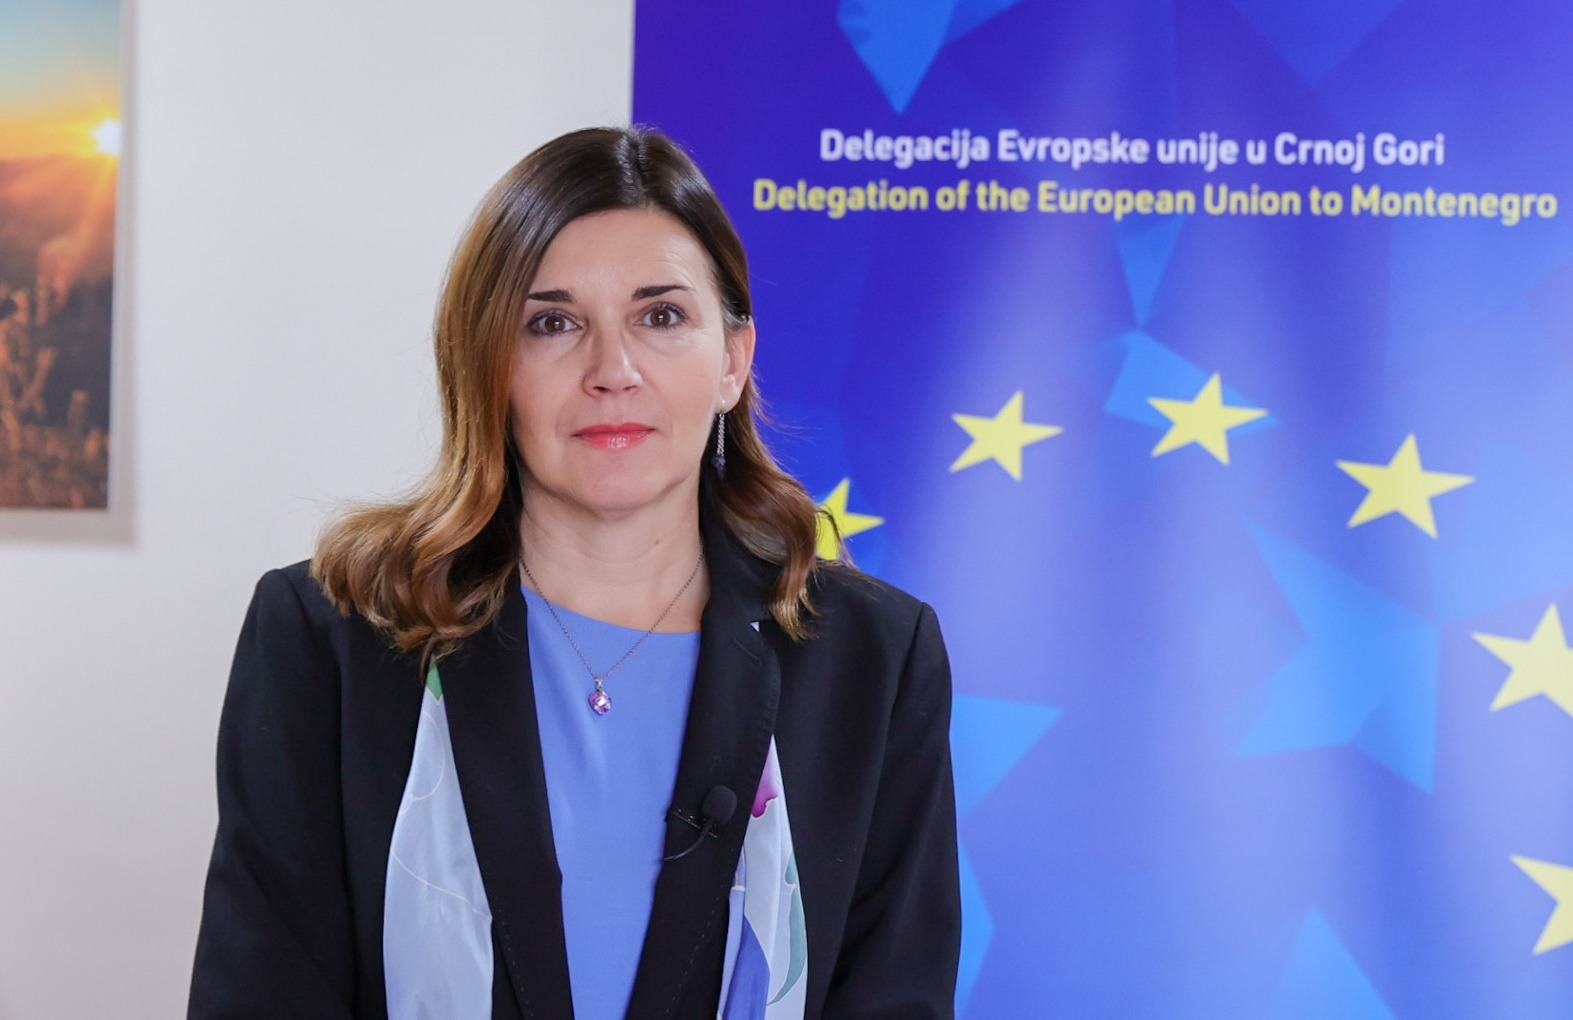 Oana Kristina Popa (Foto: Ambasada EU u Crnoj Gori)